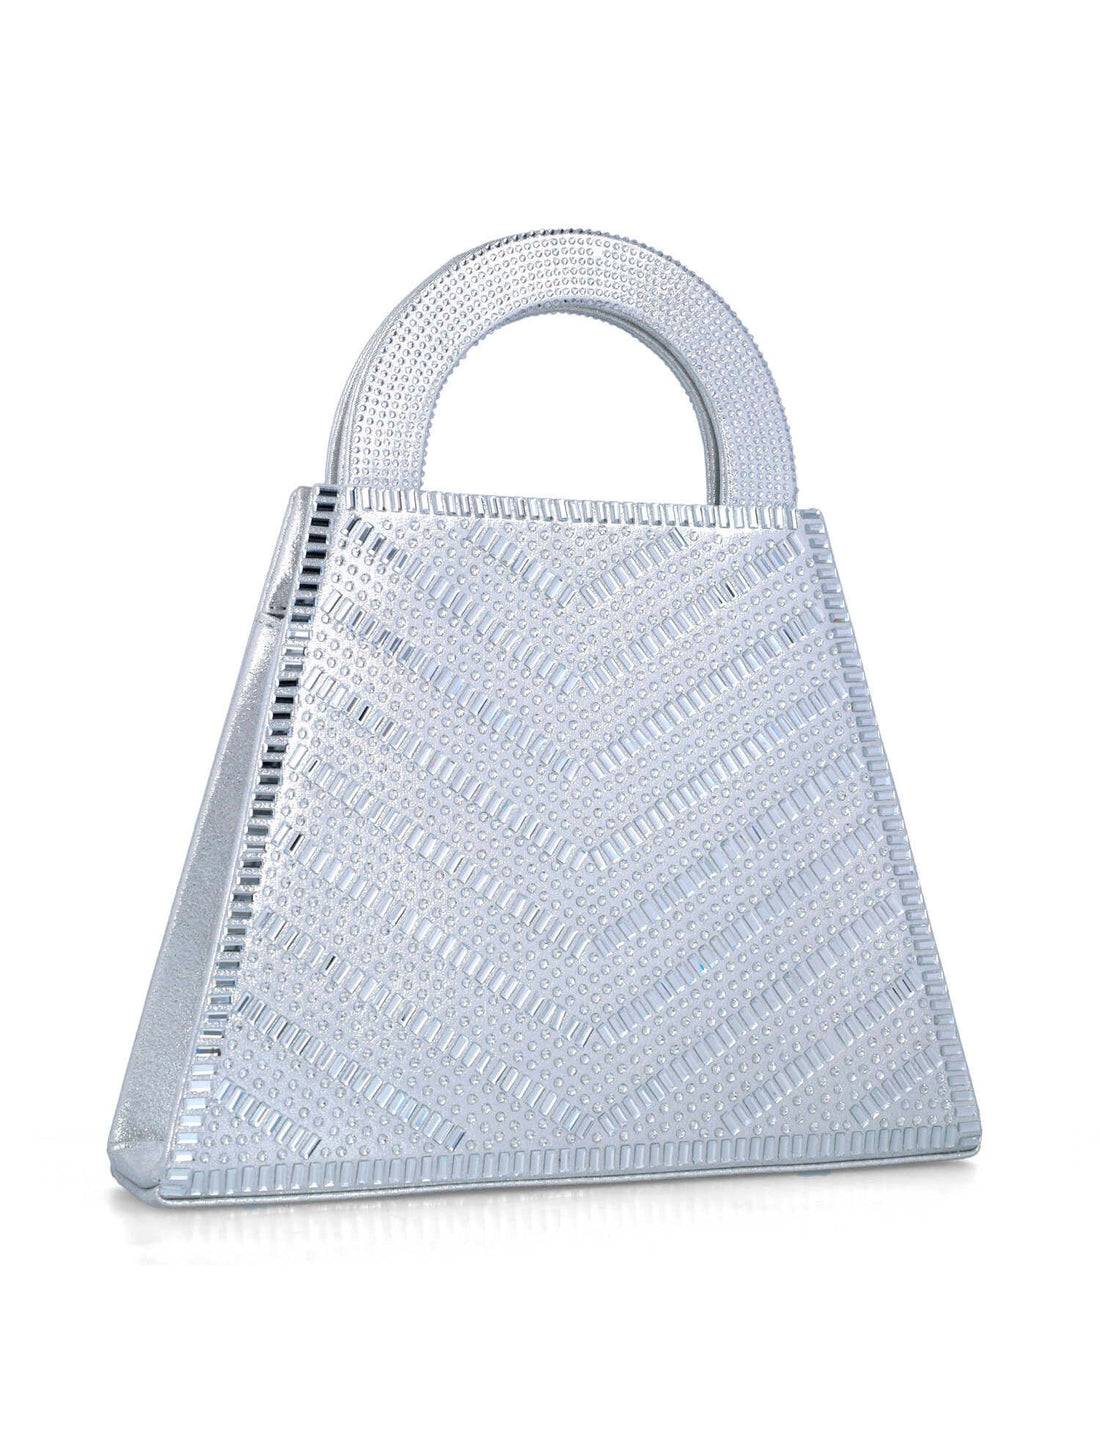 Silver Handbag With Embellished Hand Strap_85535_09_02